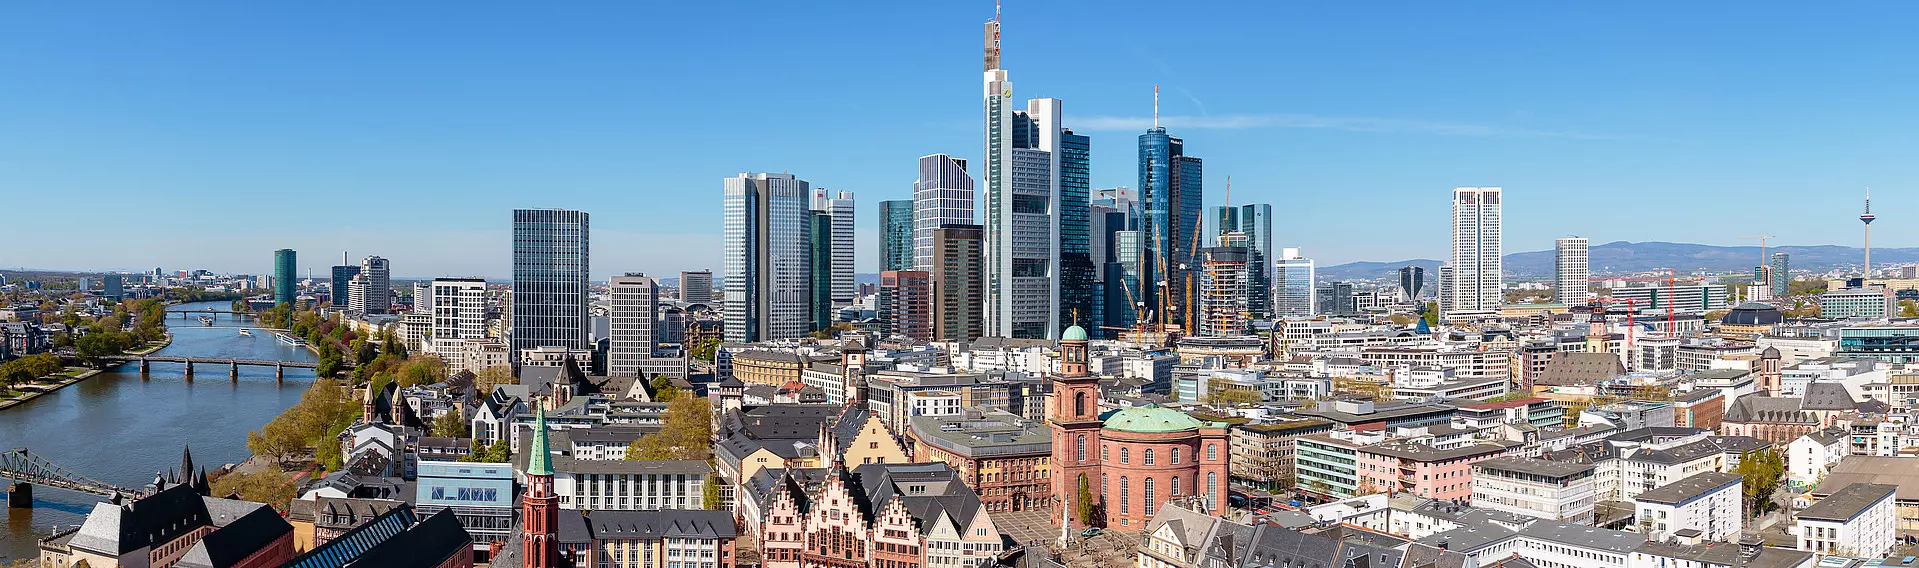 Frankfurt am Main von oben beim schönen Wetter mit dem Main im Bild 